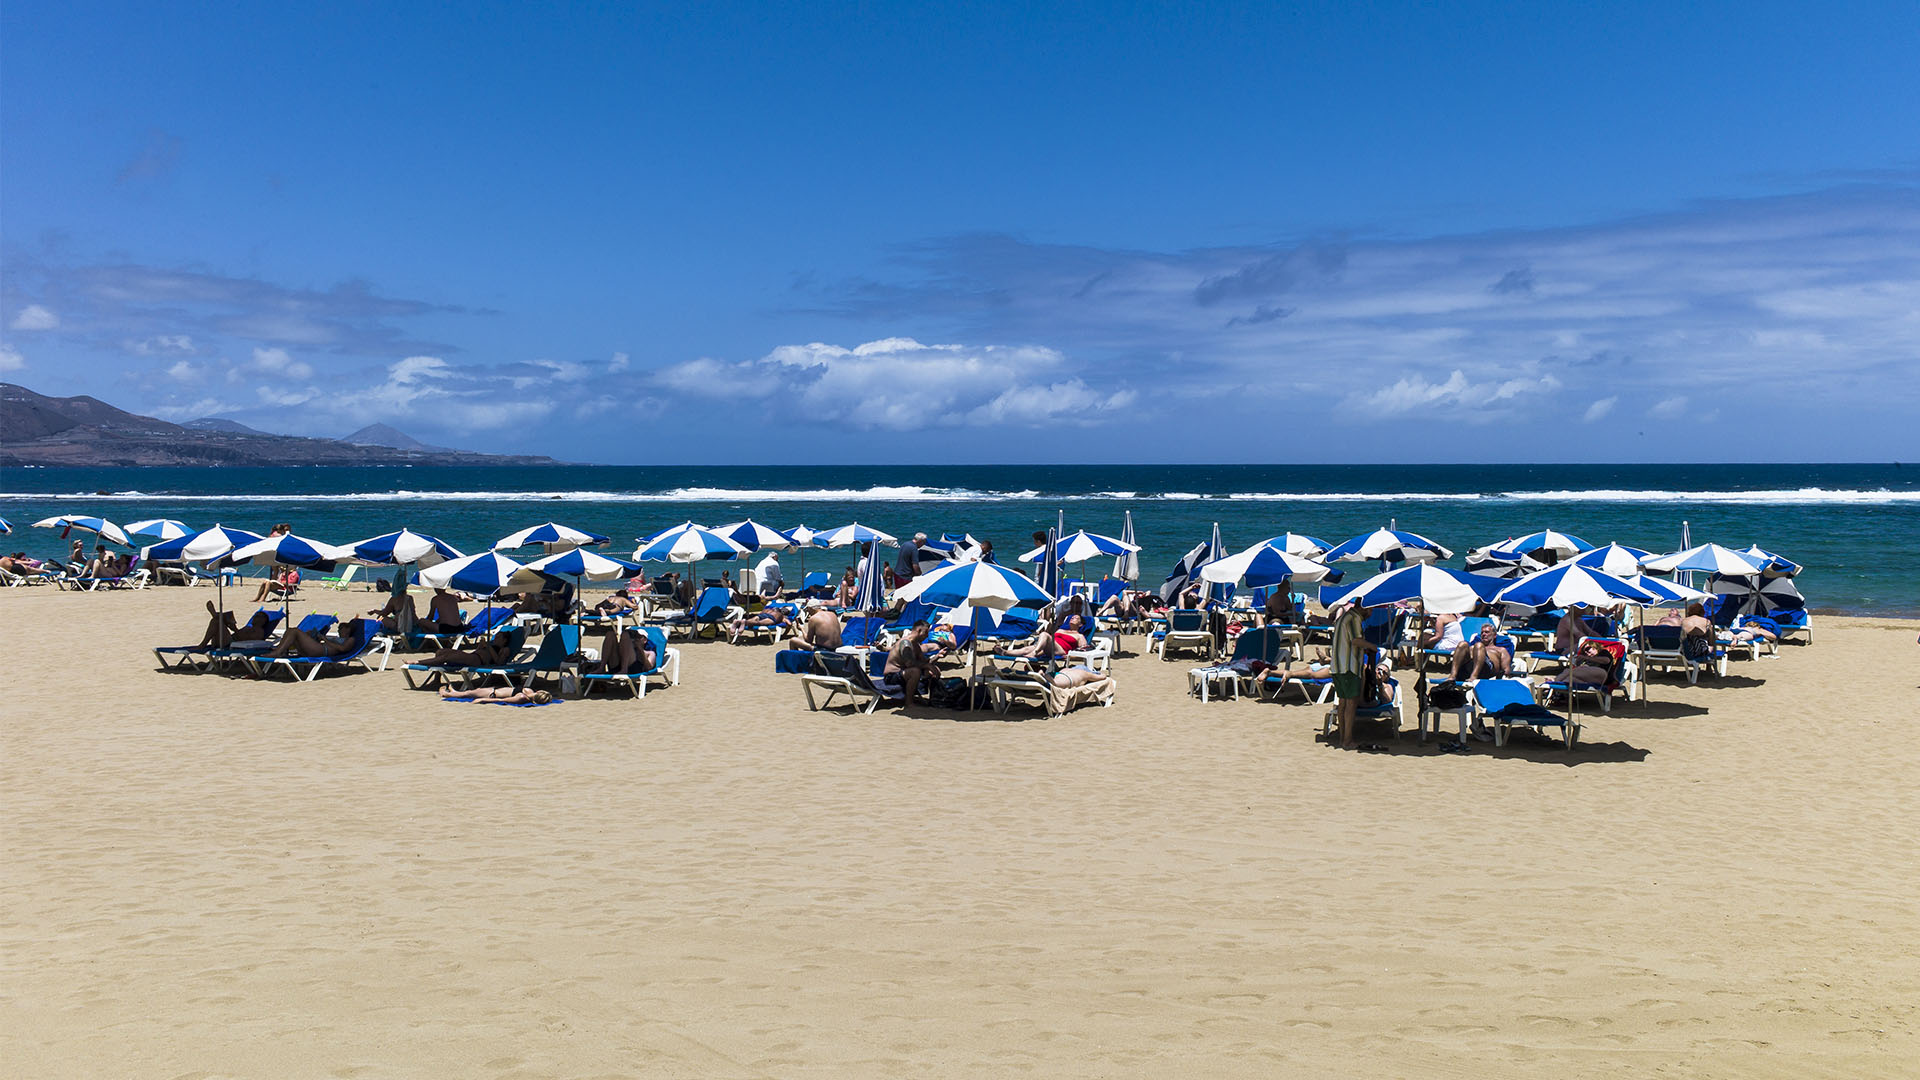 Sonnenschirme und Liegen für Touristen am Playa de las Canteras. Einheimische liegen lieber im Sand am Playa de las Canteras.